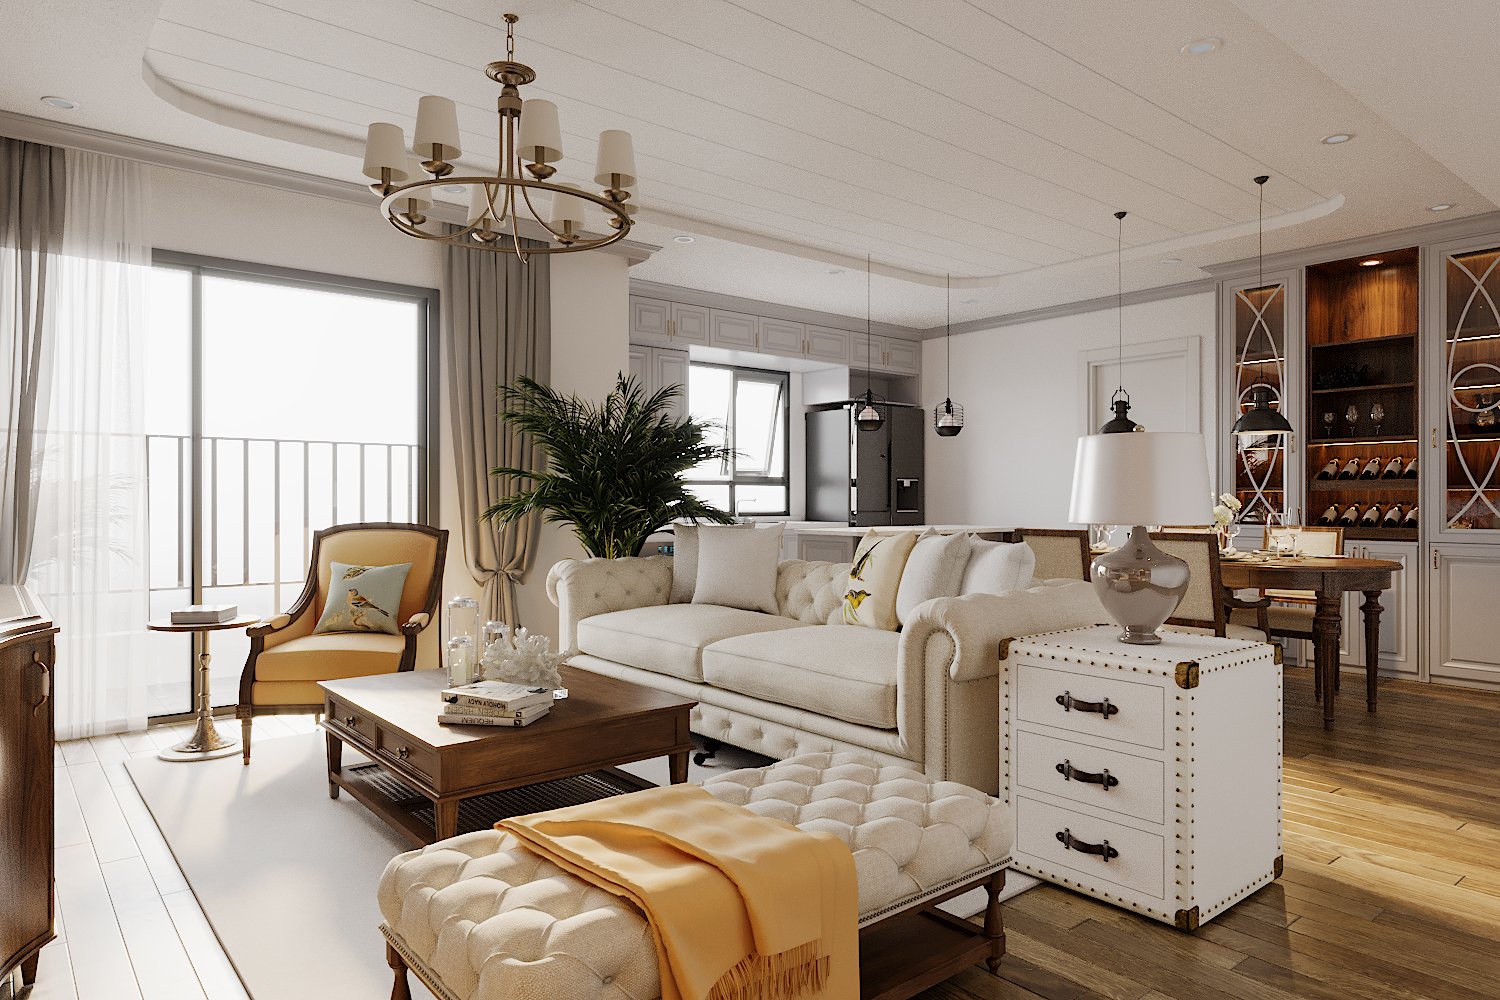 Tông màu be, trắng bao phủ hầu như toàn bộ không gian phòng khách, làm nền cho sắc vàng pastel từ ghế bành và chăn mỏng thêm phần nổi bật.